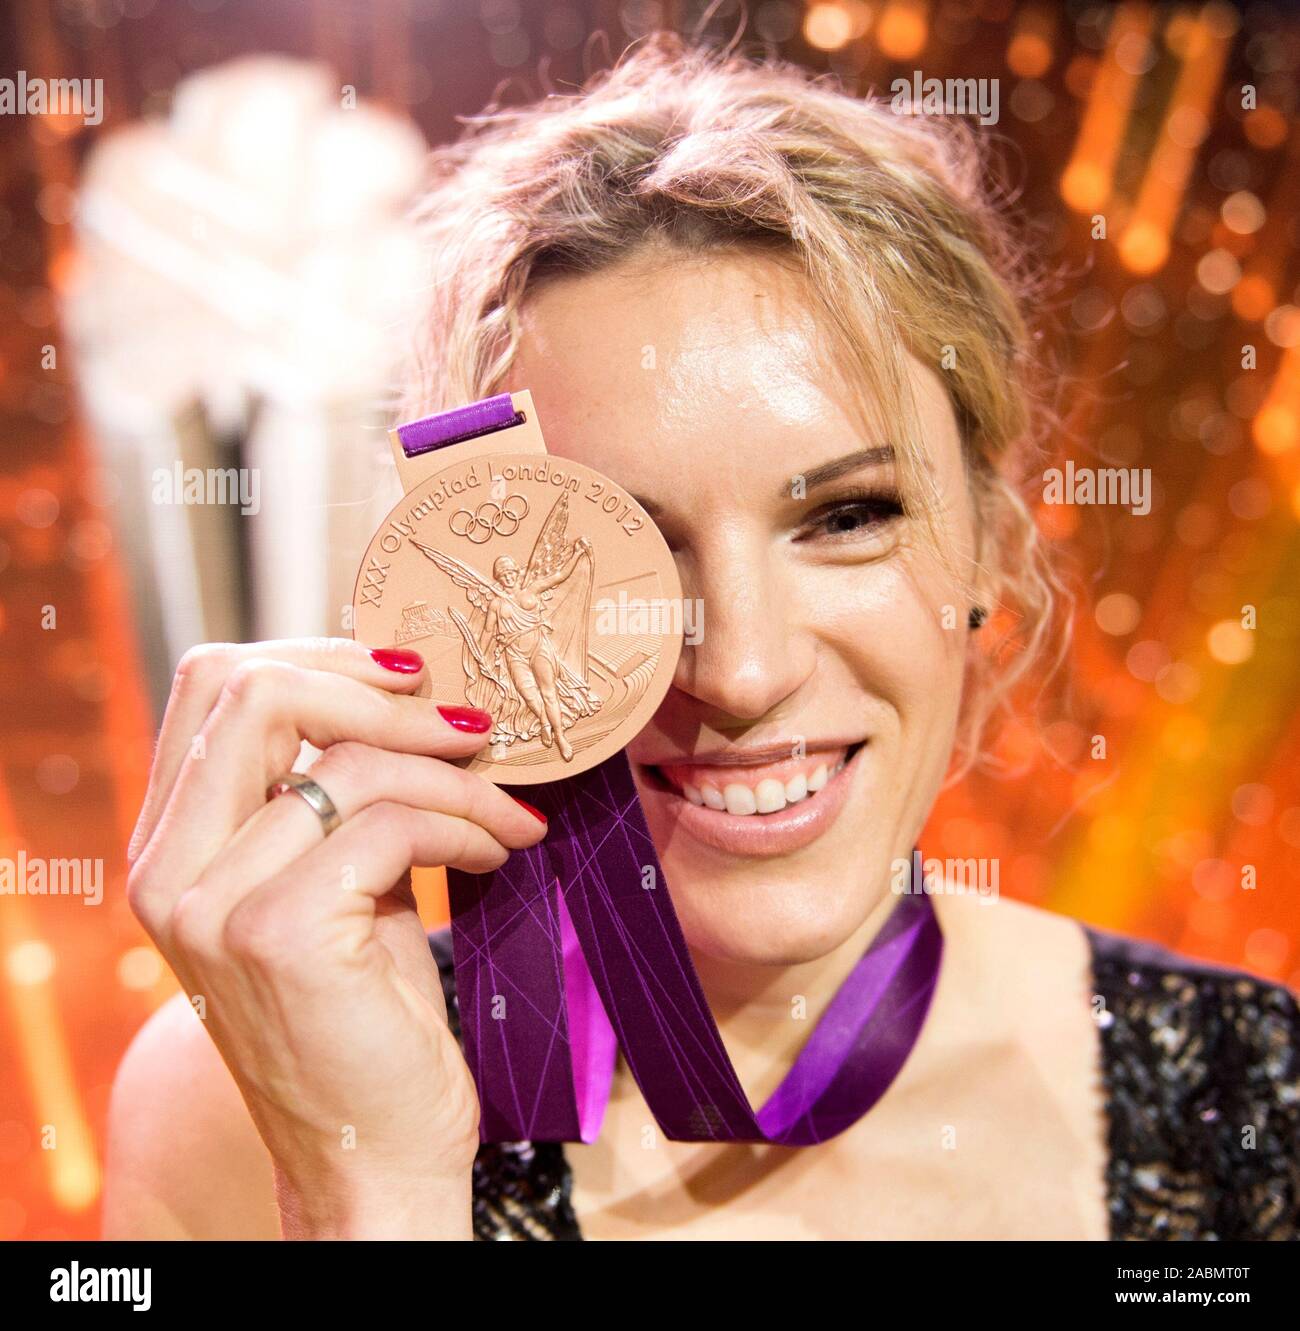 Lithuanian athlete Austra Skujyte has won the Olympic award Stock Photo